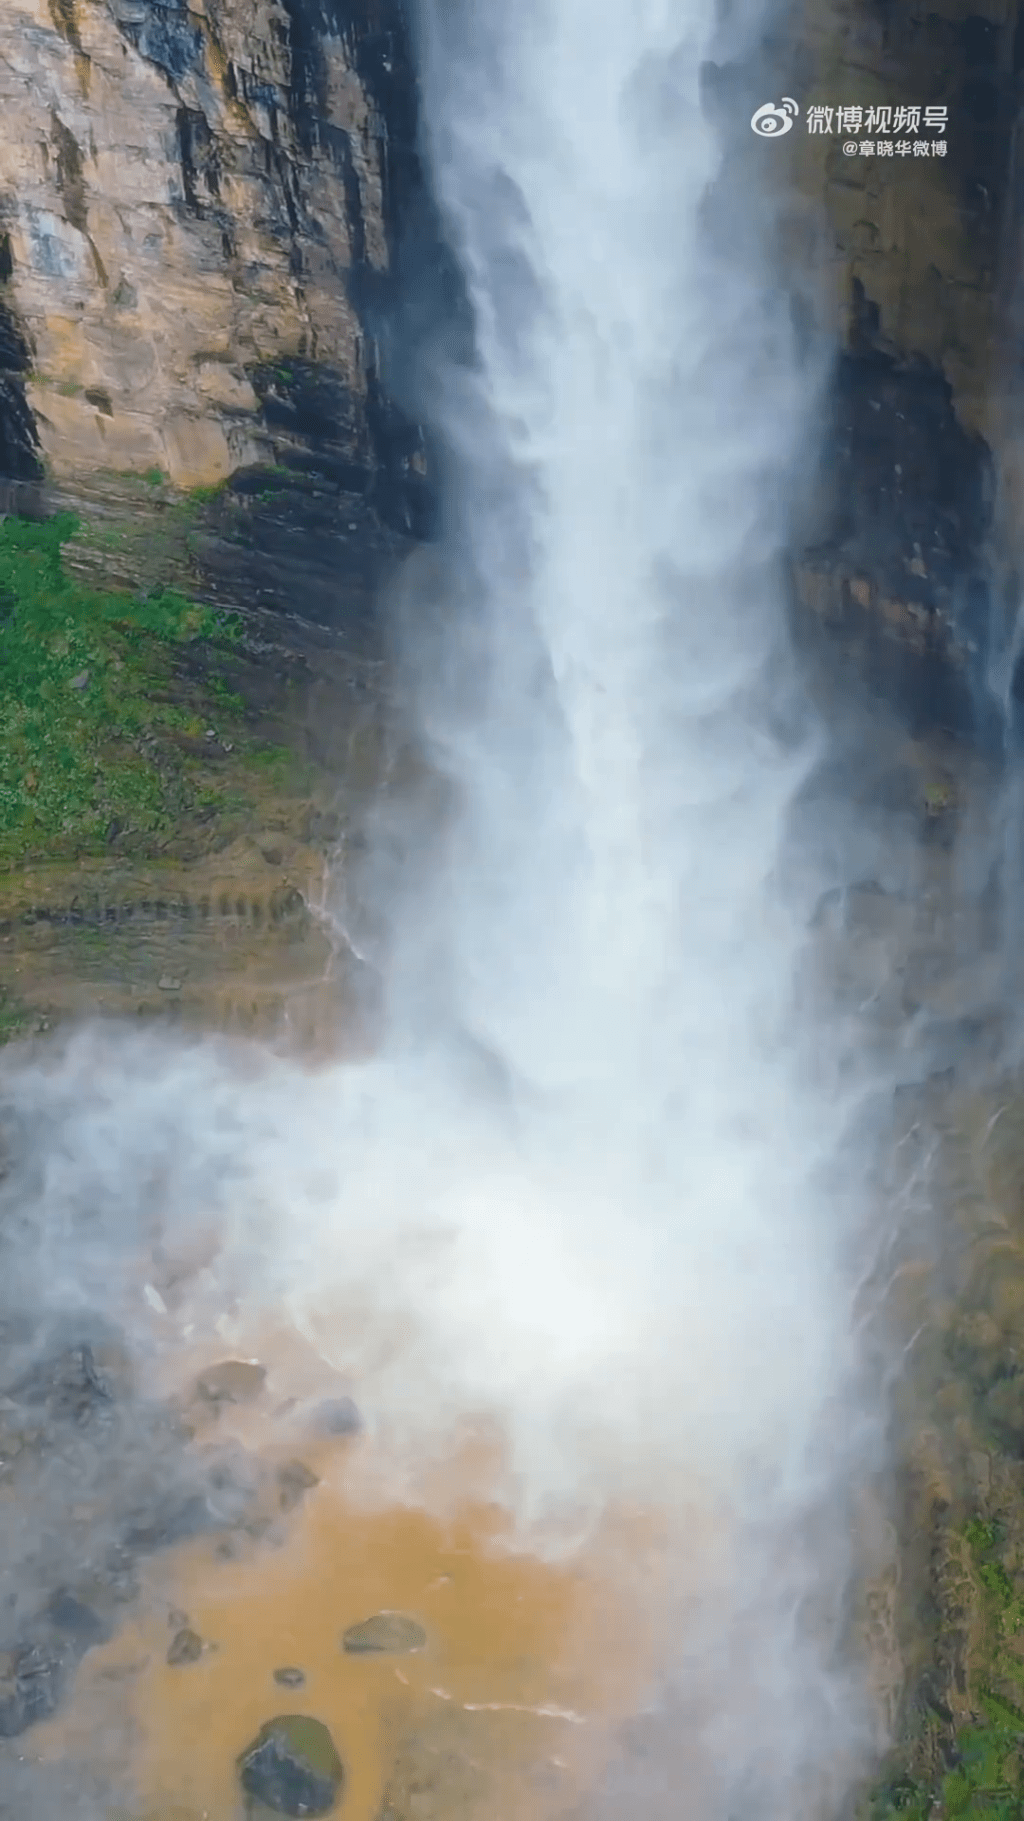 云台山瀑布美景包括水潭溅起1米多高水花，化成一团水雾，把瀑布罩在朦朦的雾中。